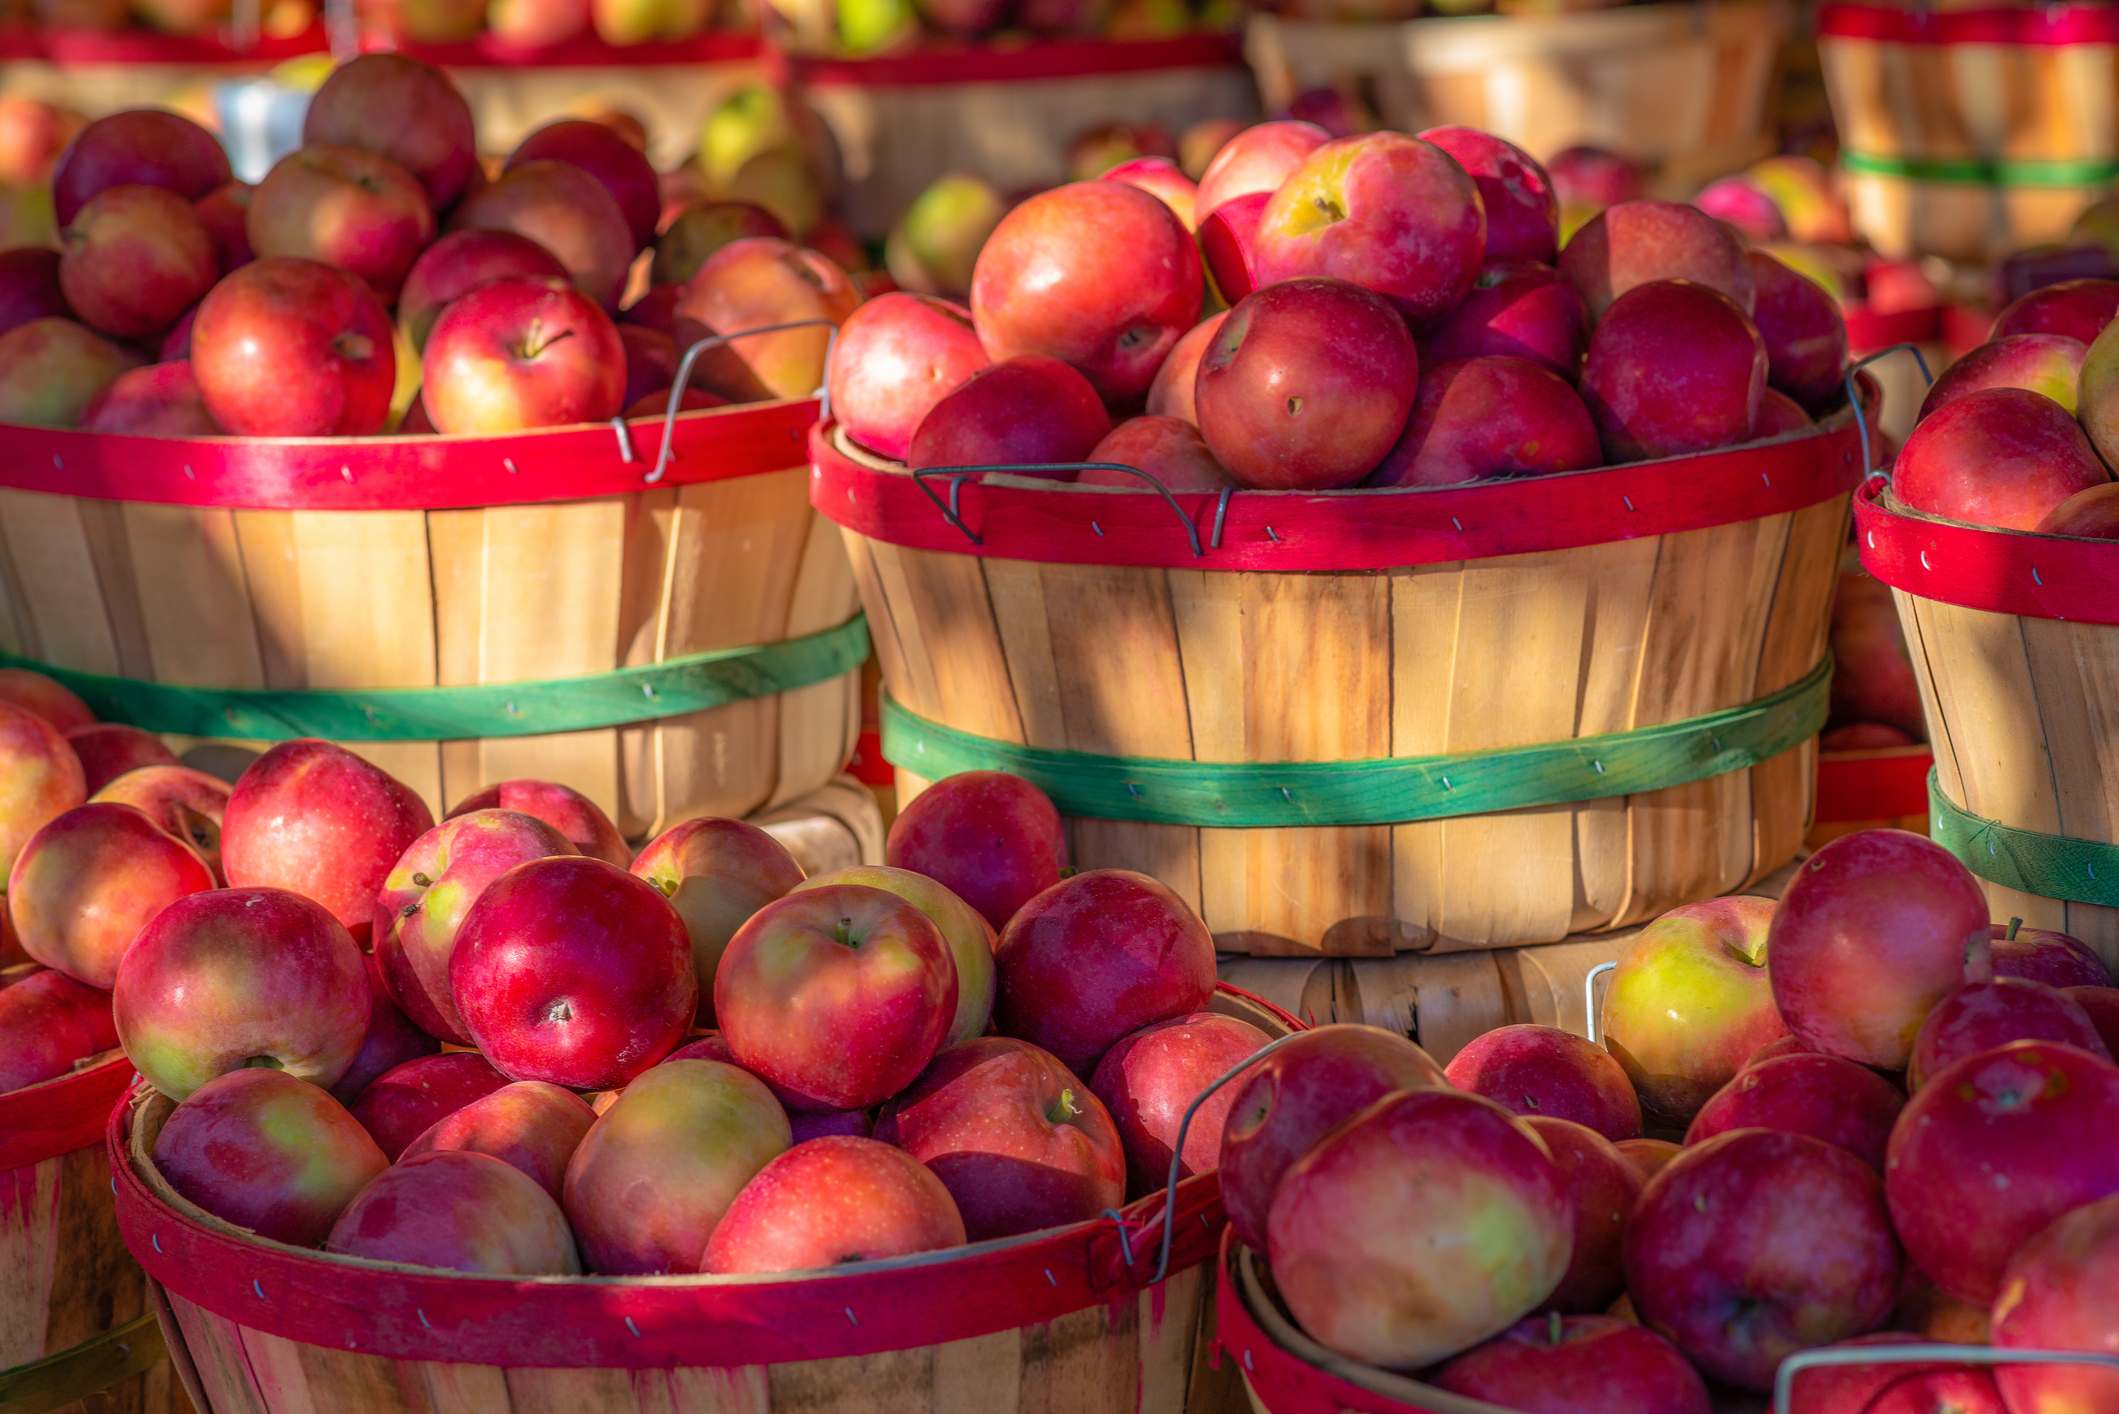 Barrels of apples